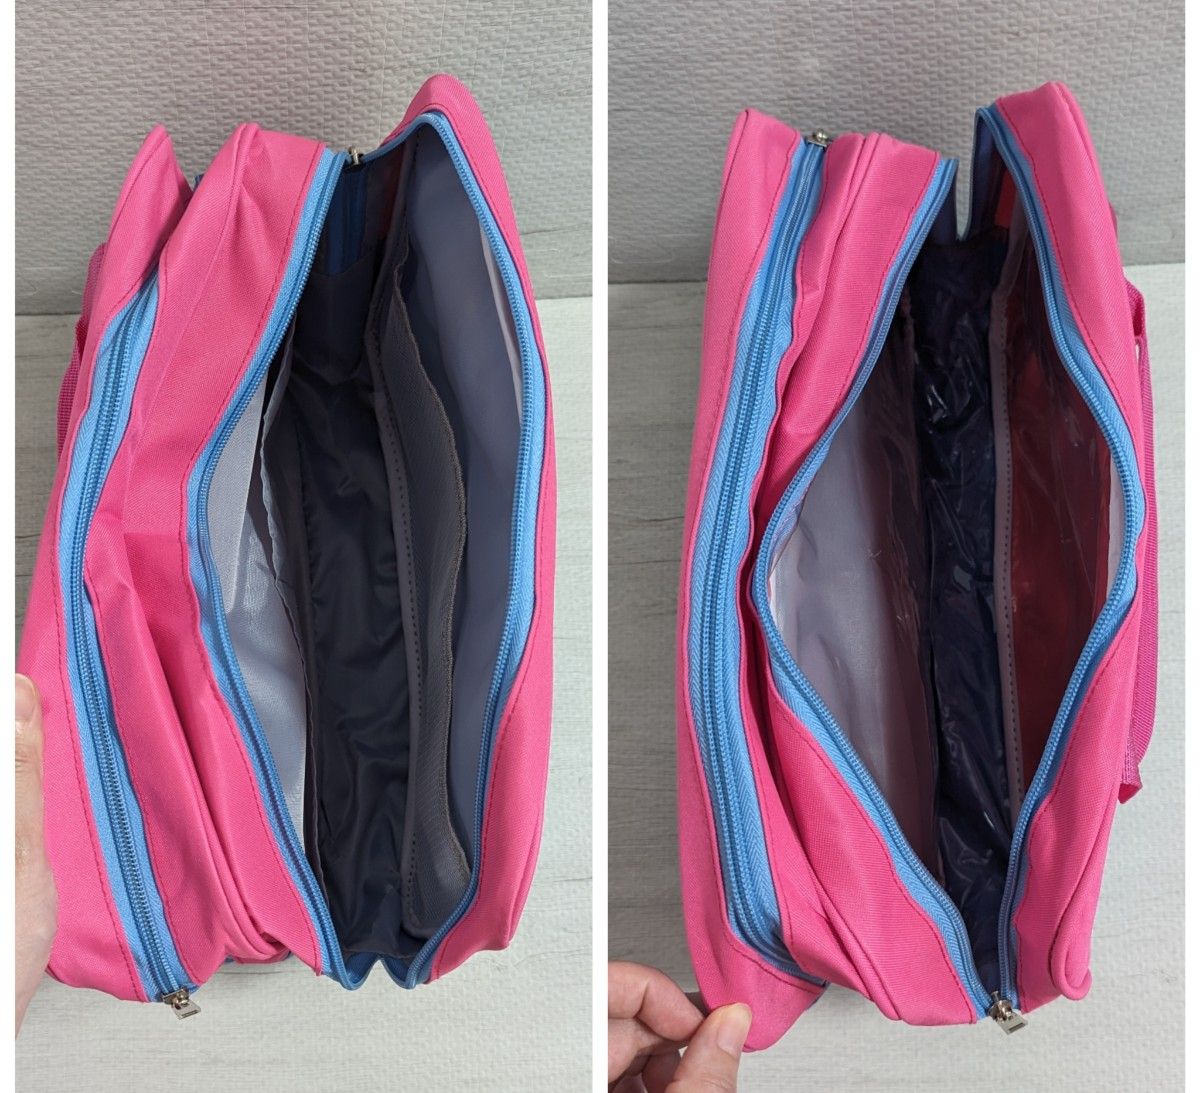 【新品】 プールバッグ ピンク 乾湿分離 ビーチバック スポーツバッグ 防水